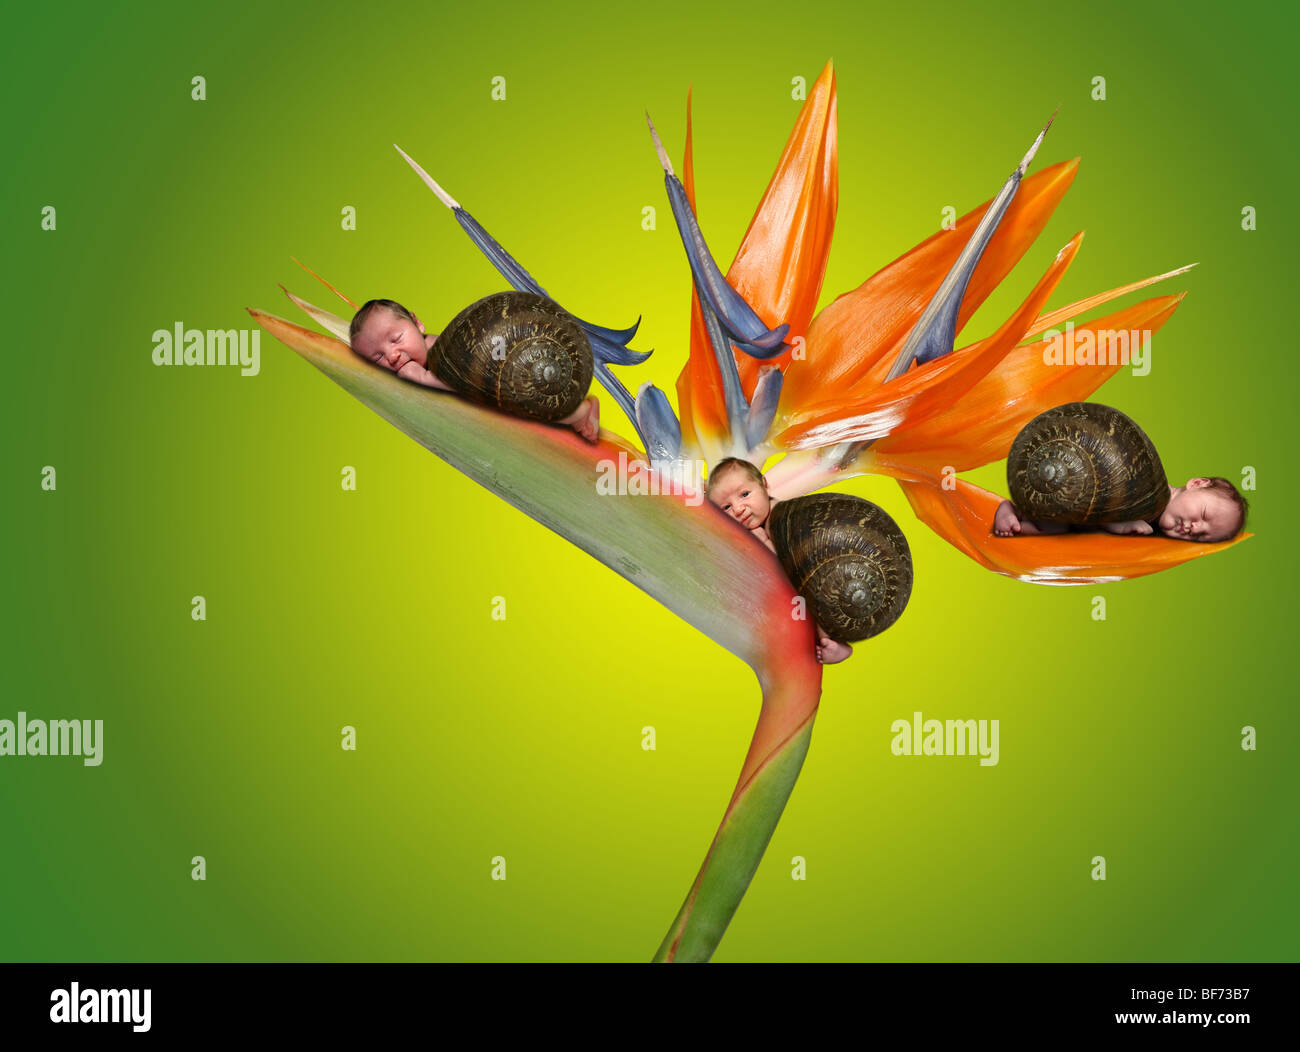 Tre piccoli neonati giacente su un fiore. Fantasia surreale immagine ritratto Foto Stock